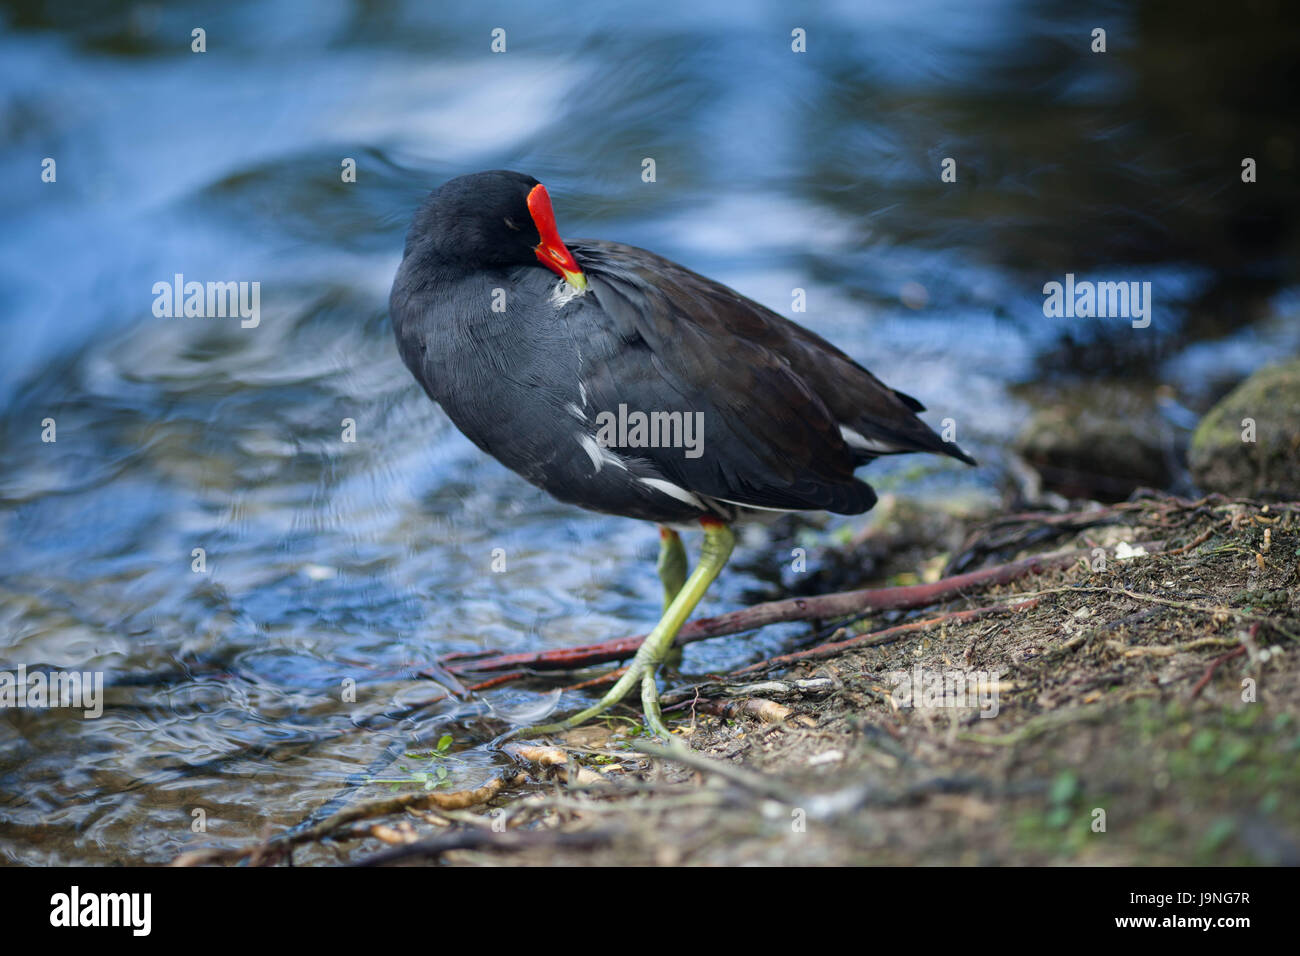 Un pájaro negro con un pico rojo caminatas en el parque alrededor del estanque. Foto de stock